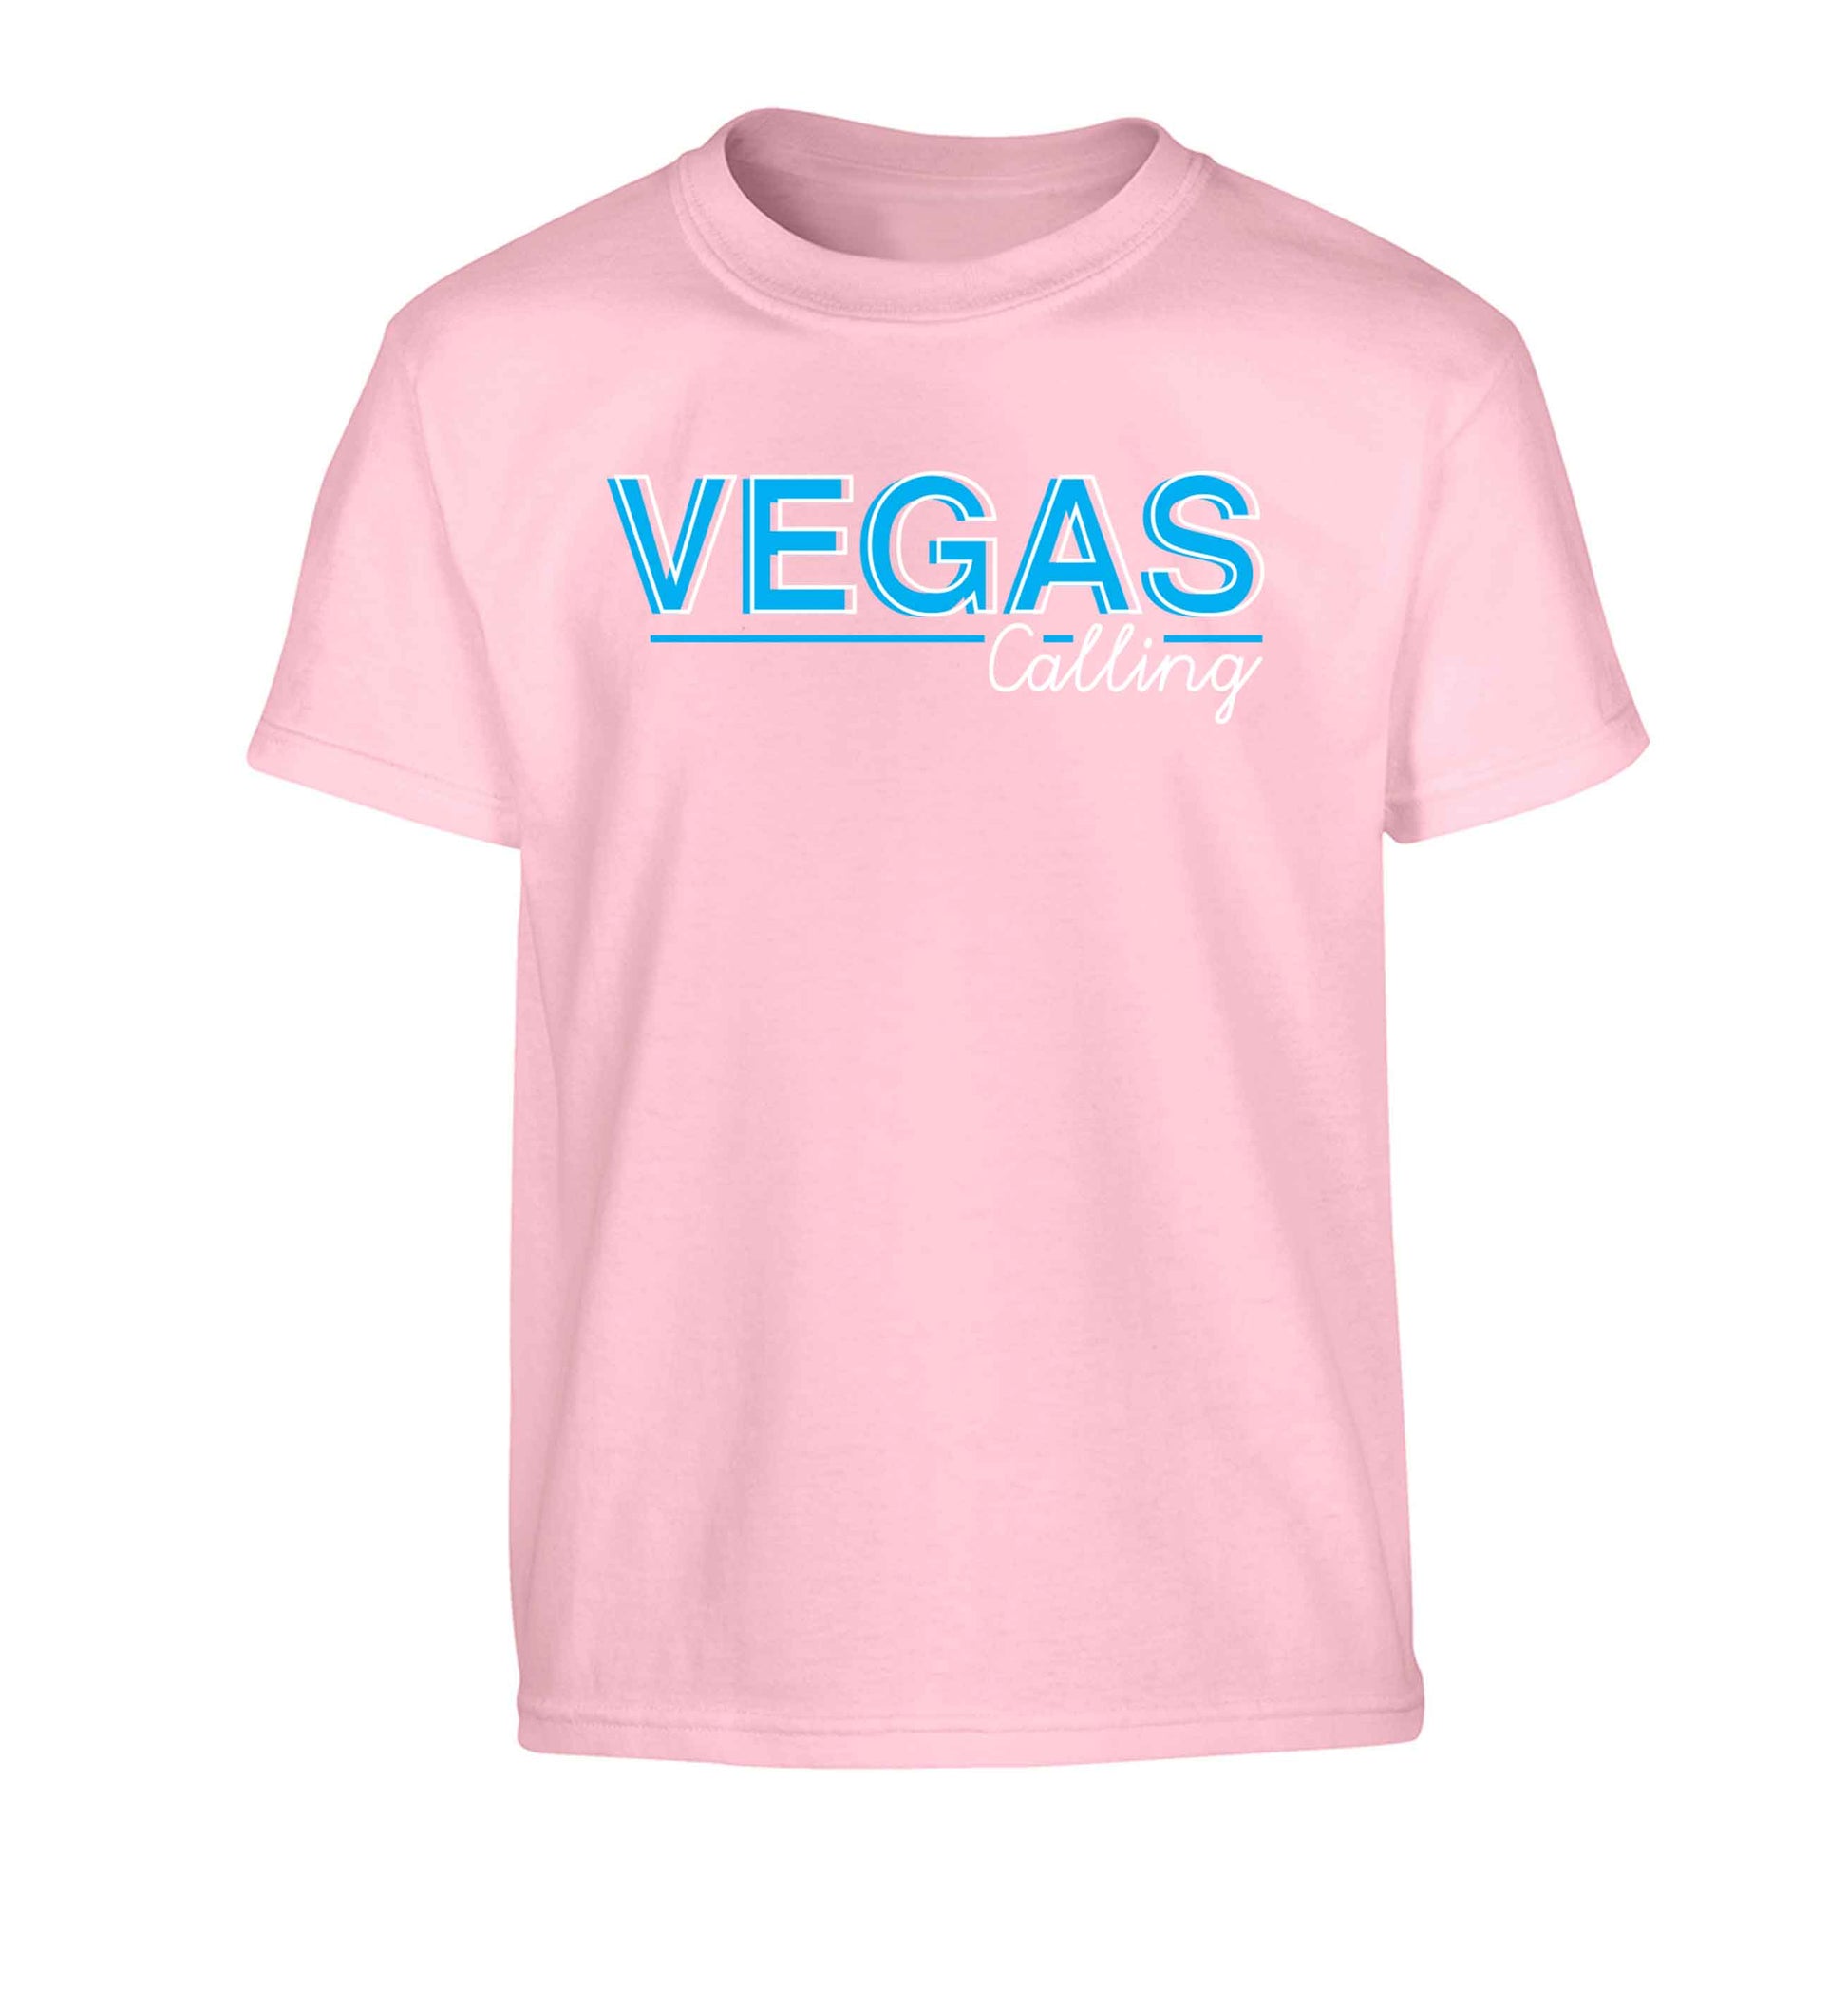 Vegas calling Children's light pink Tshirt 12-13 Years